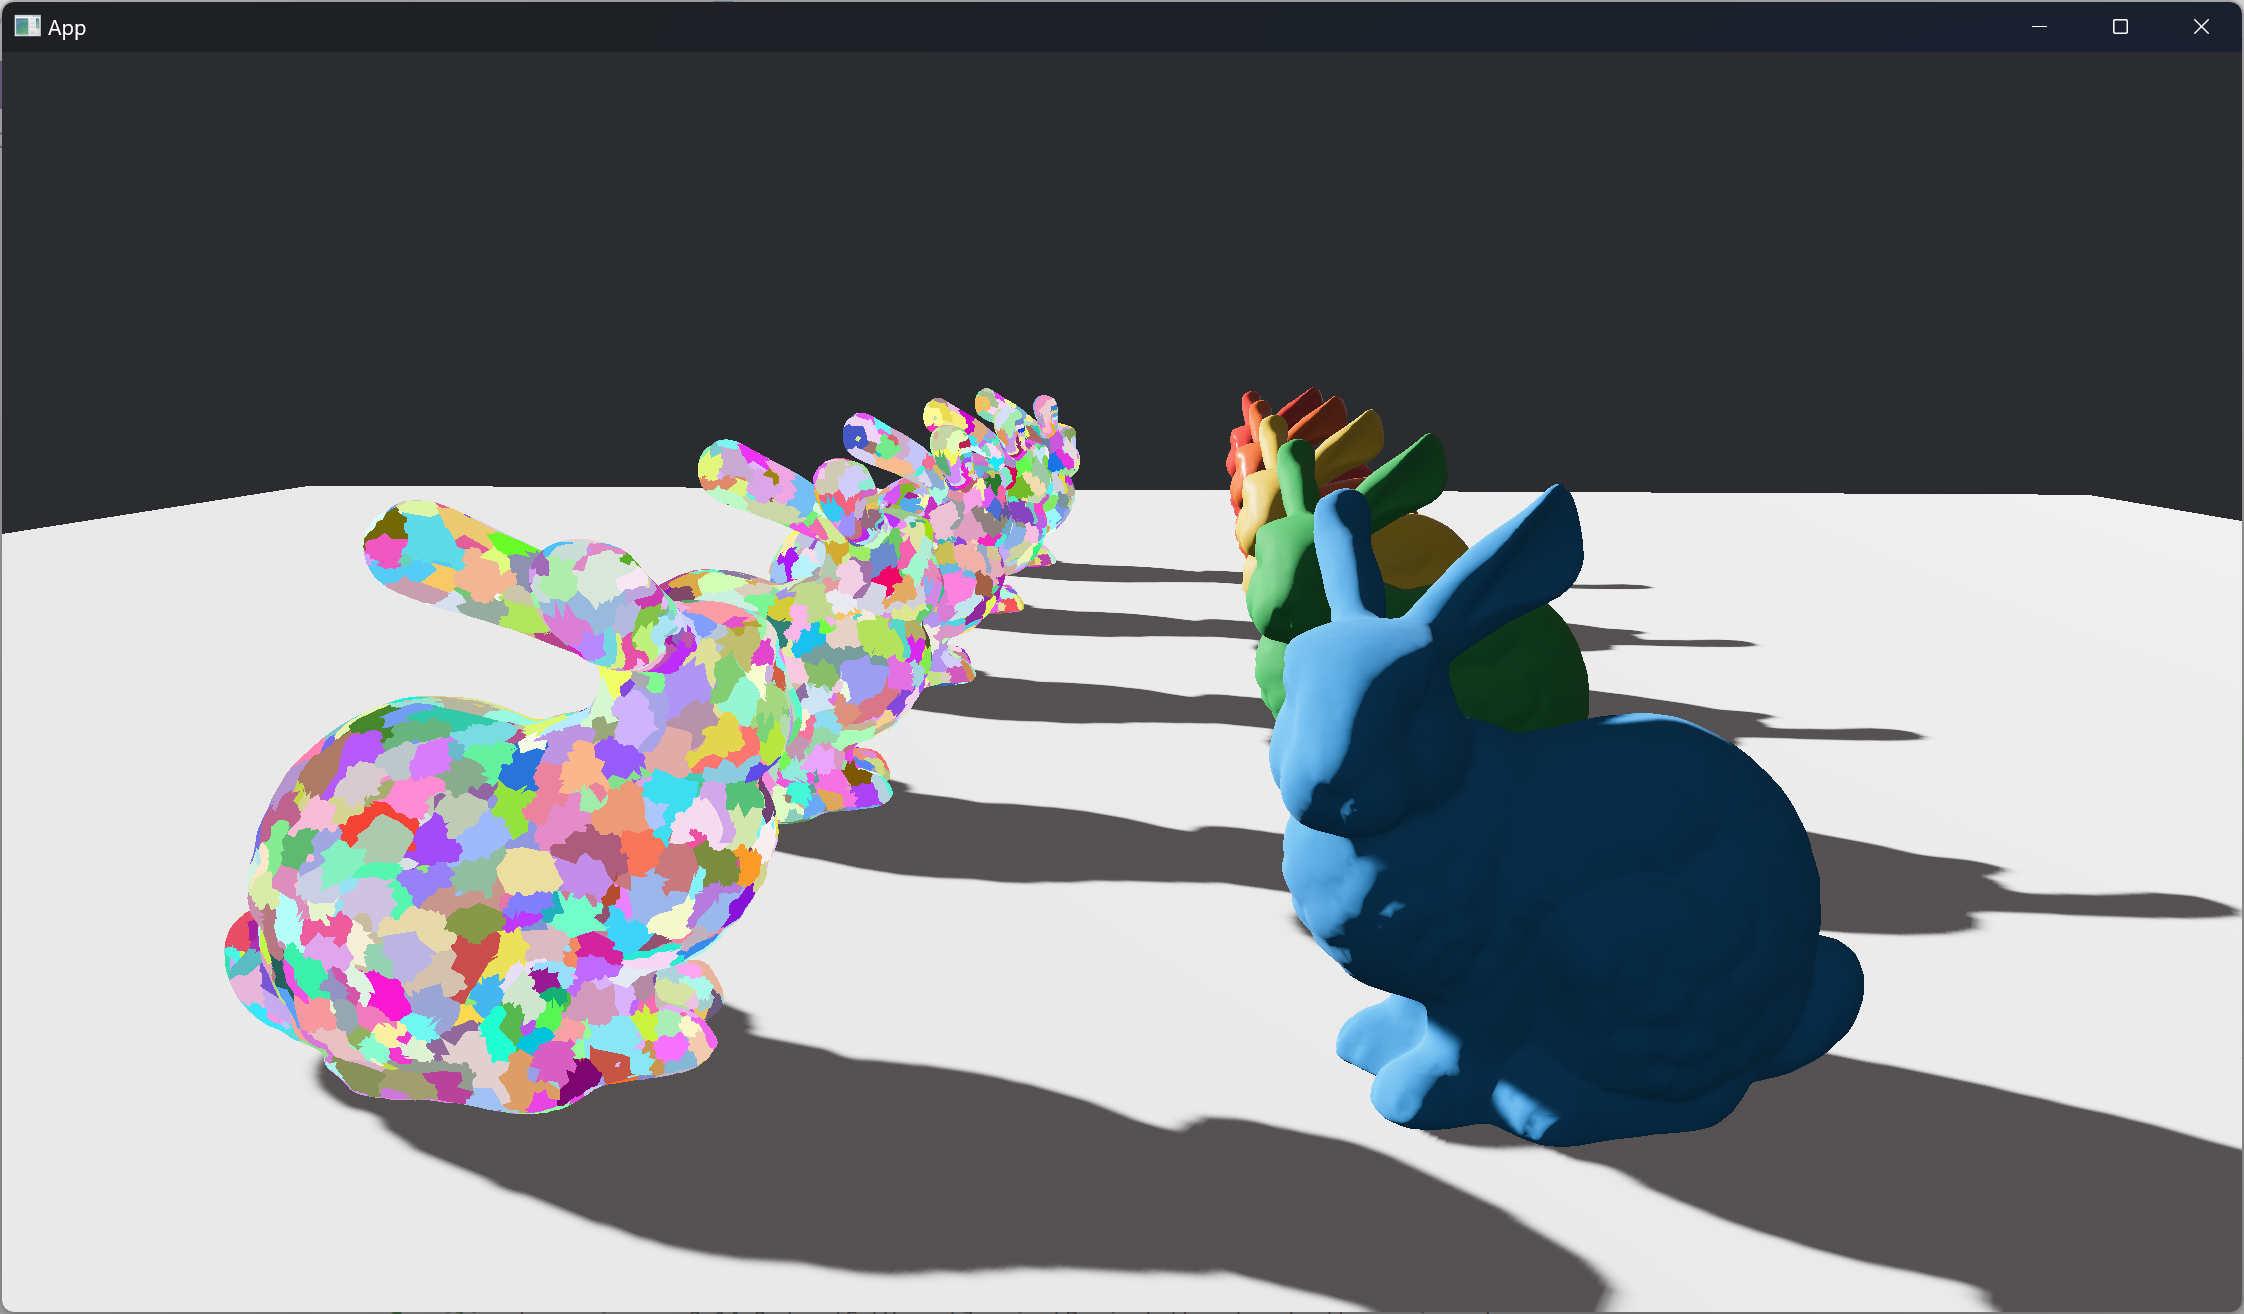 Example scene for the meshlet renderer